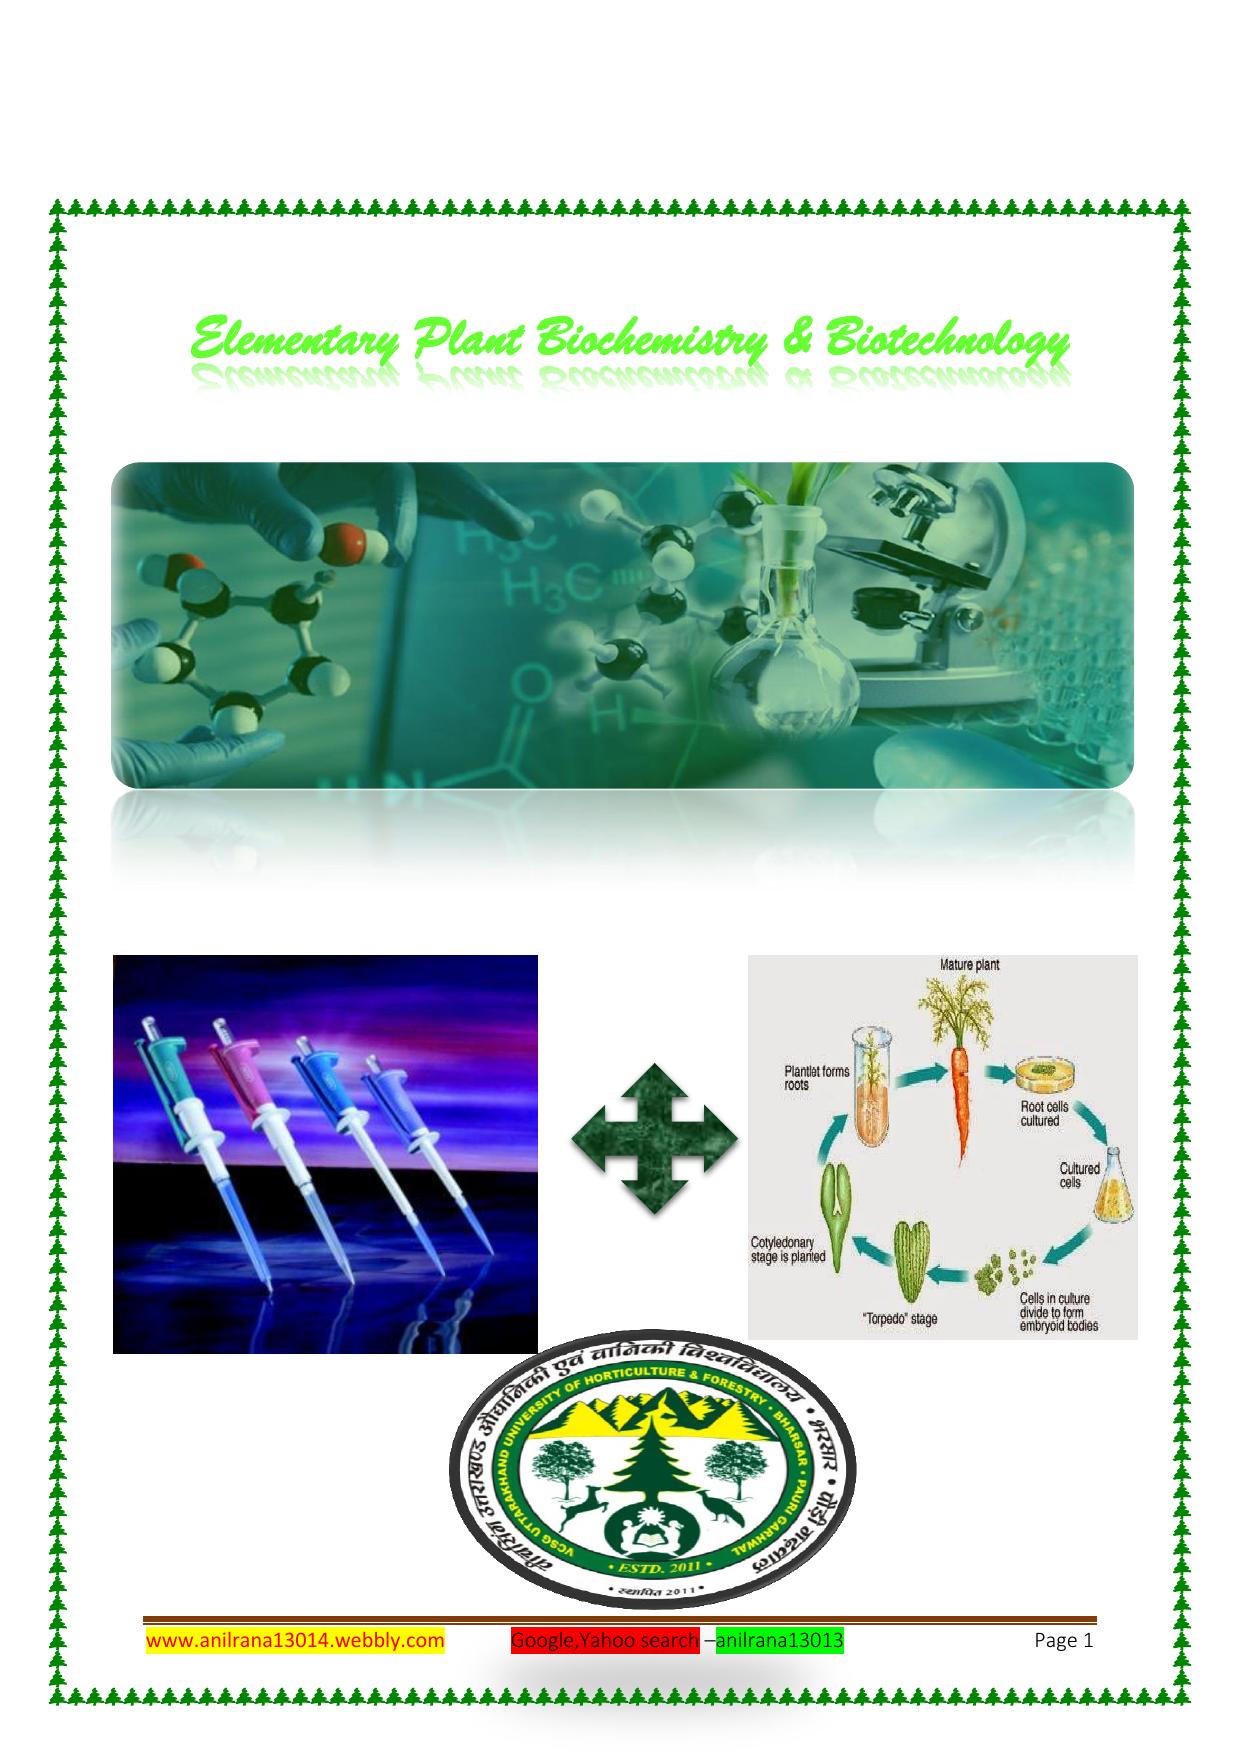 Elementary Plant Biochemistry & Biotechnology 2016